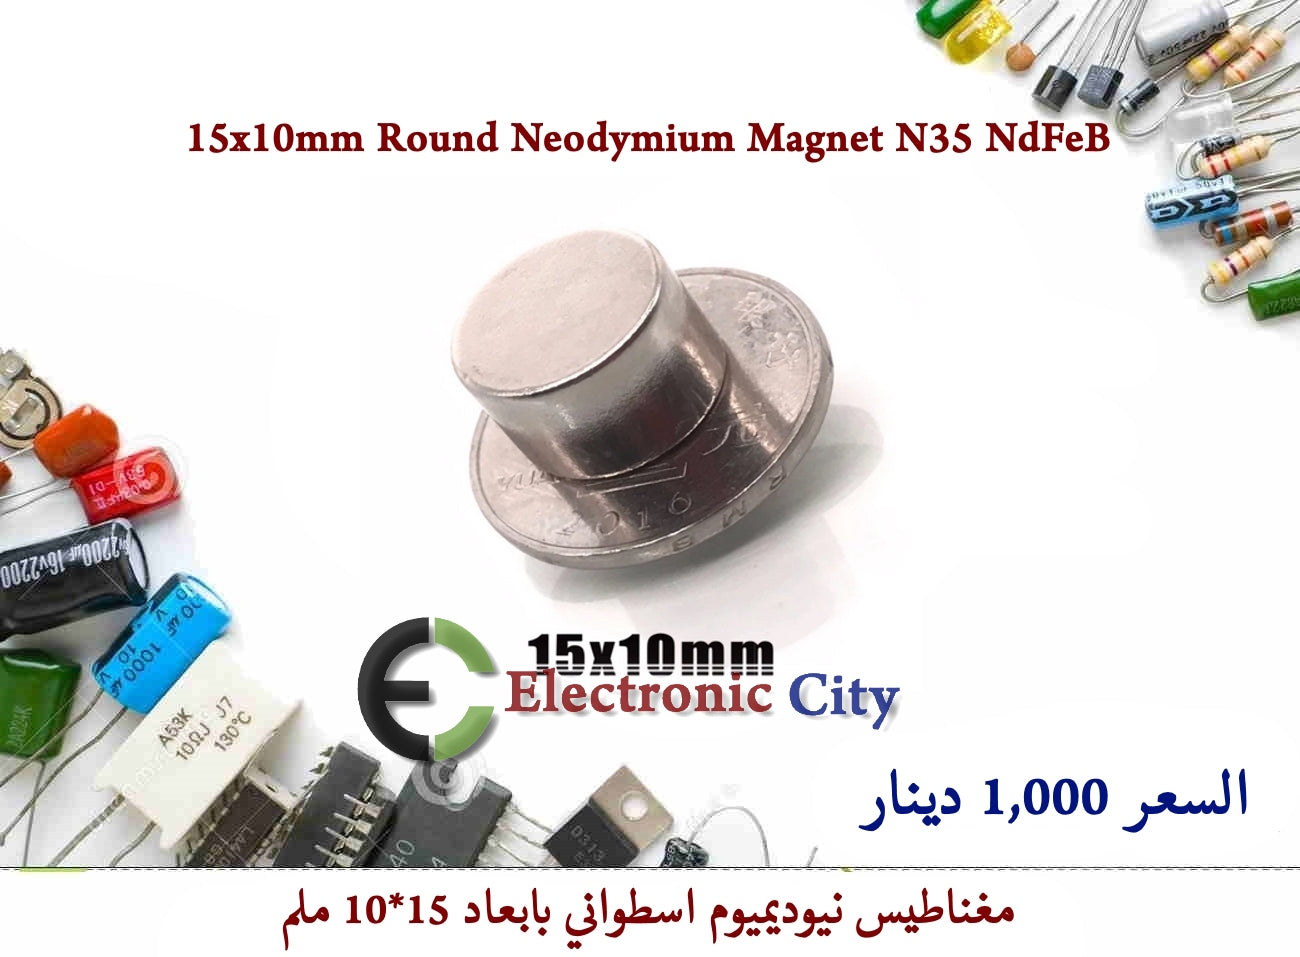 15x10mm Round Neodymium Magnet N35 NdFeB